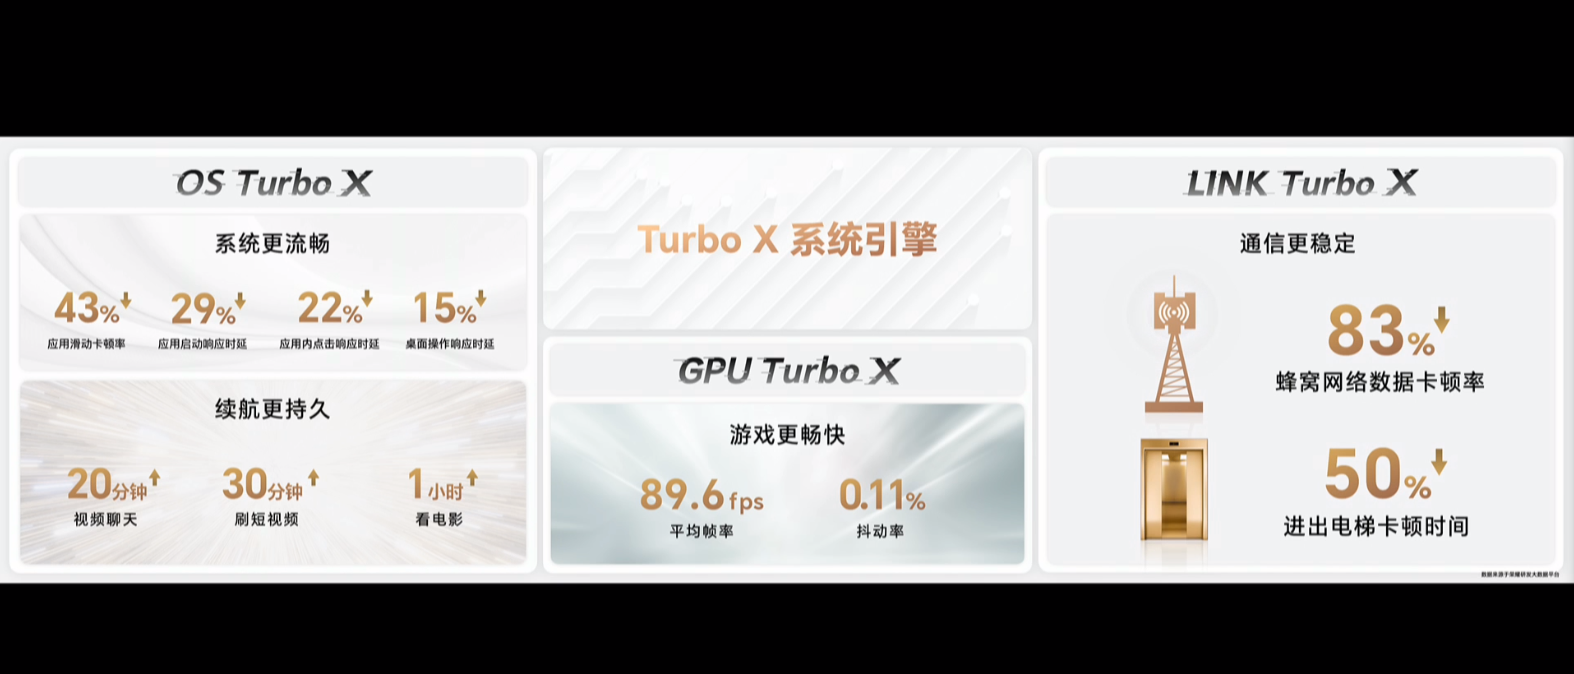 Turbo X系统引擎